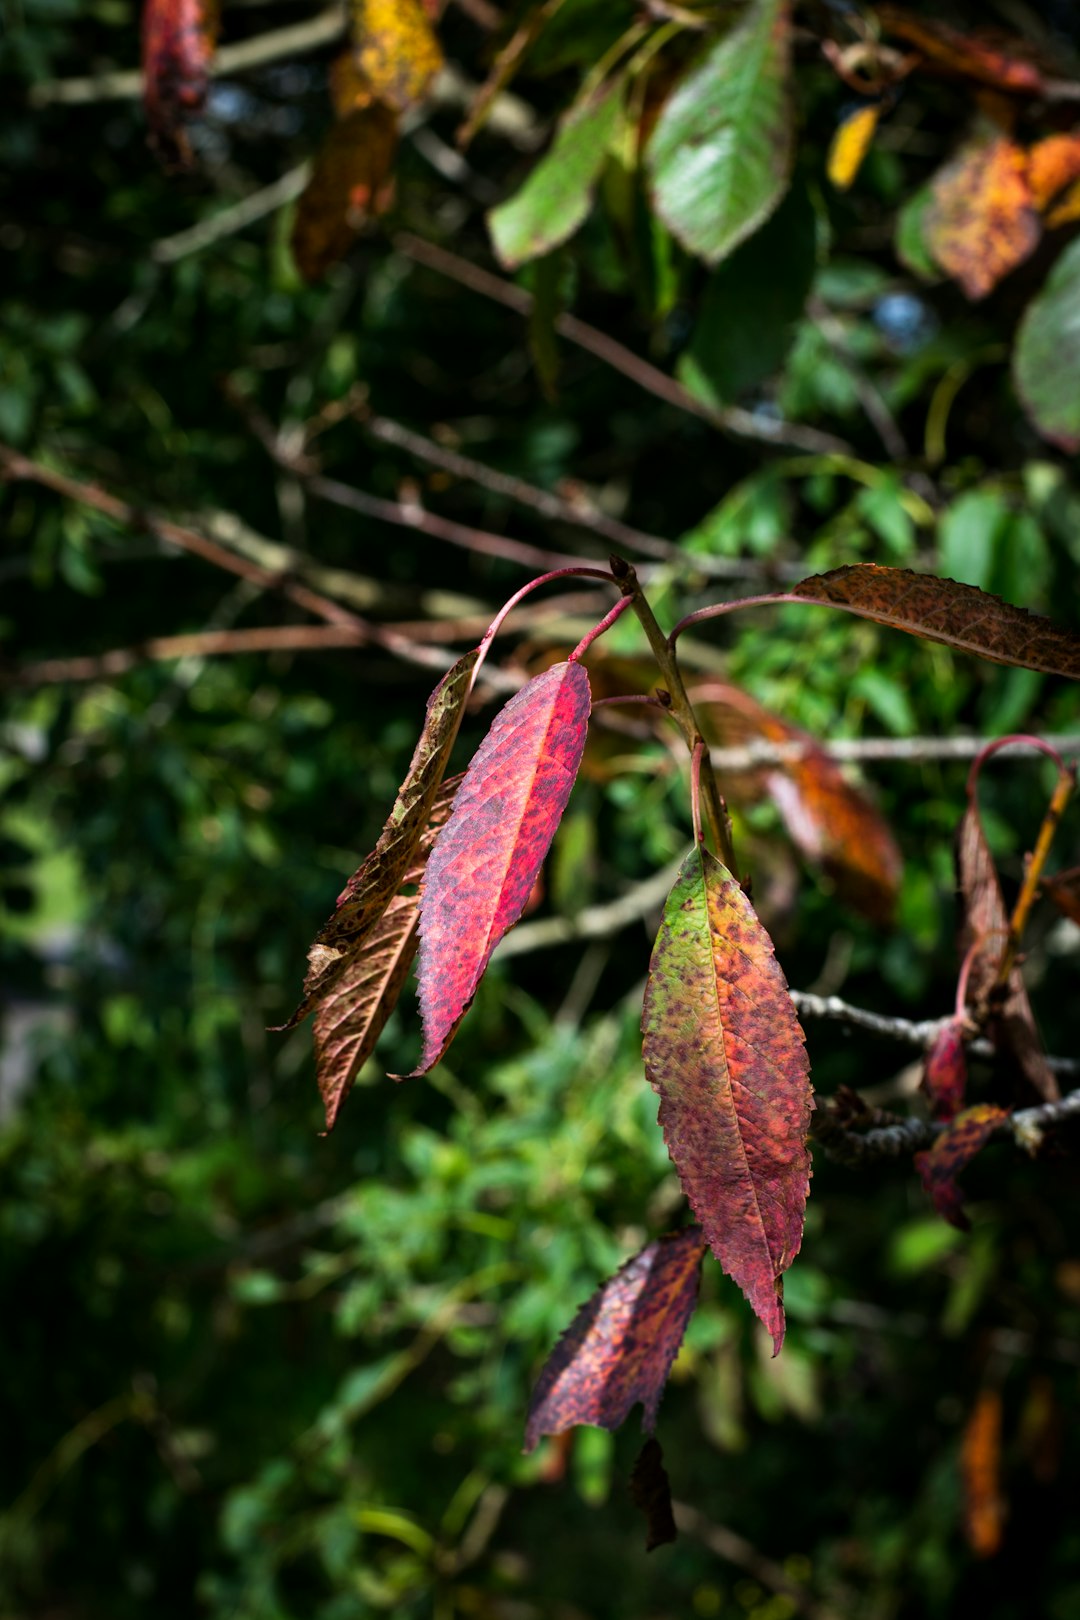 brown leaves